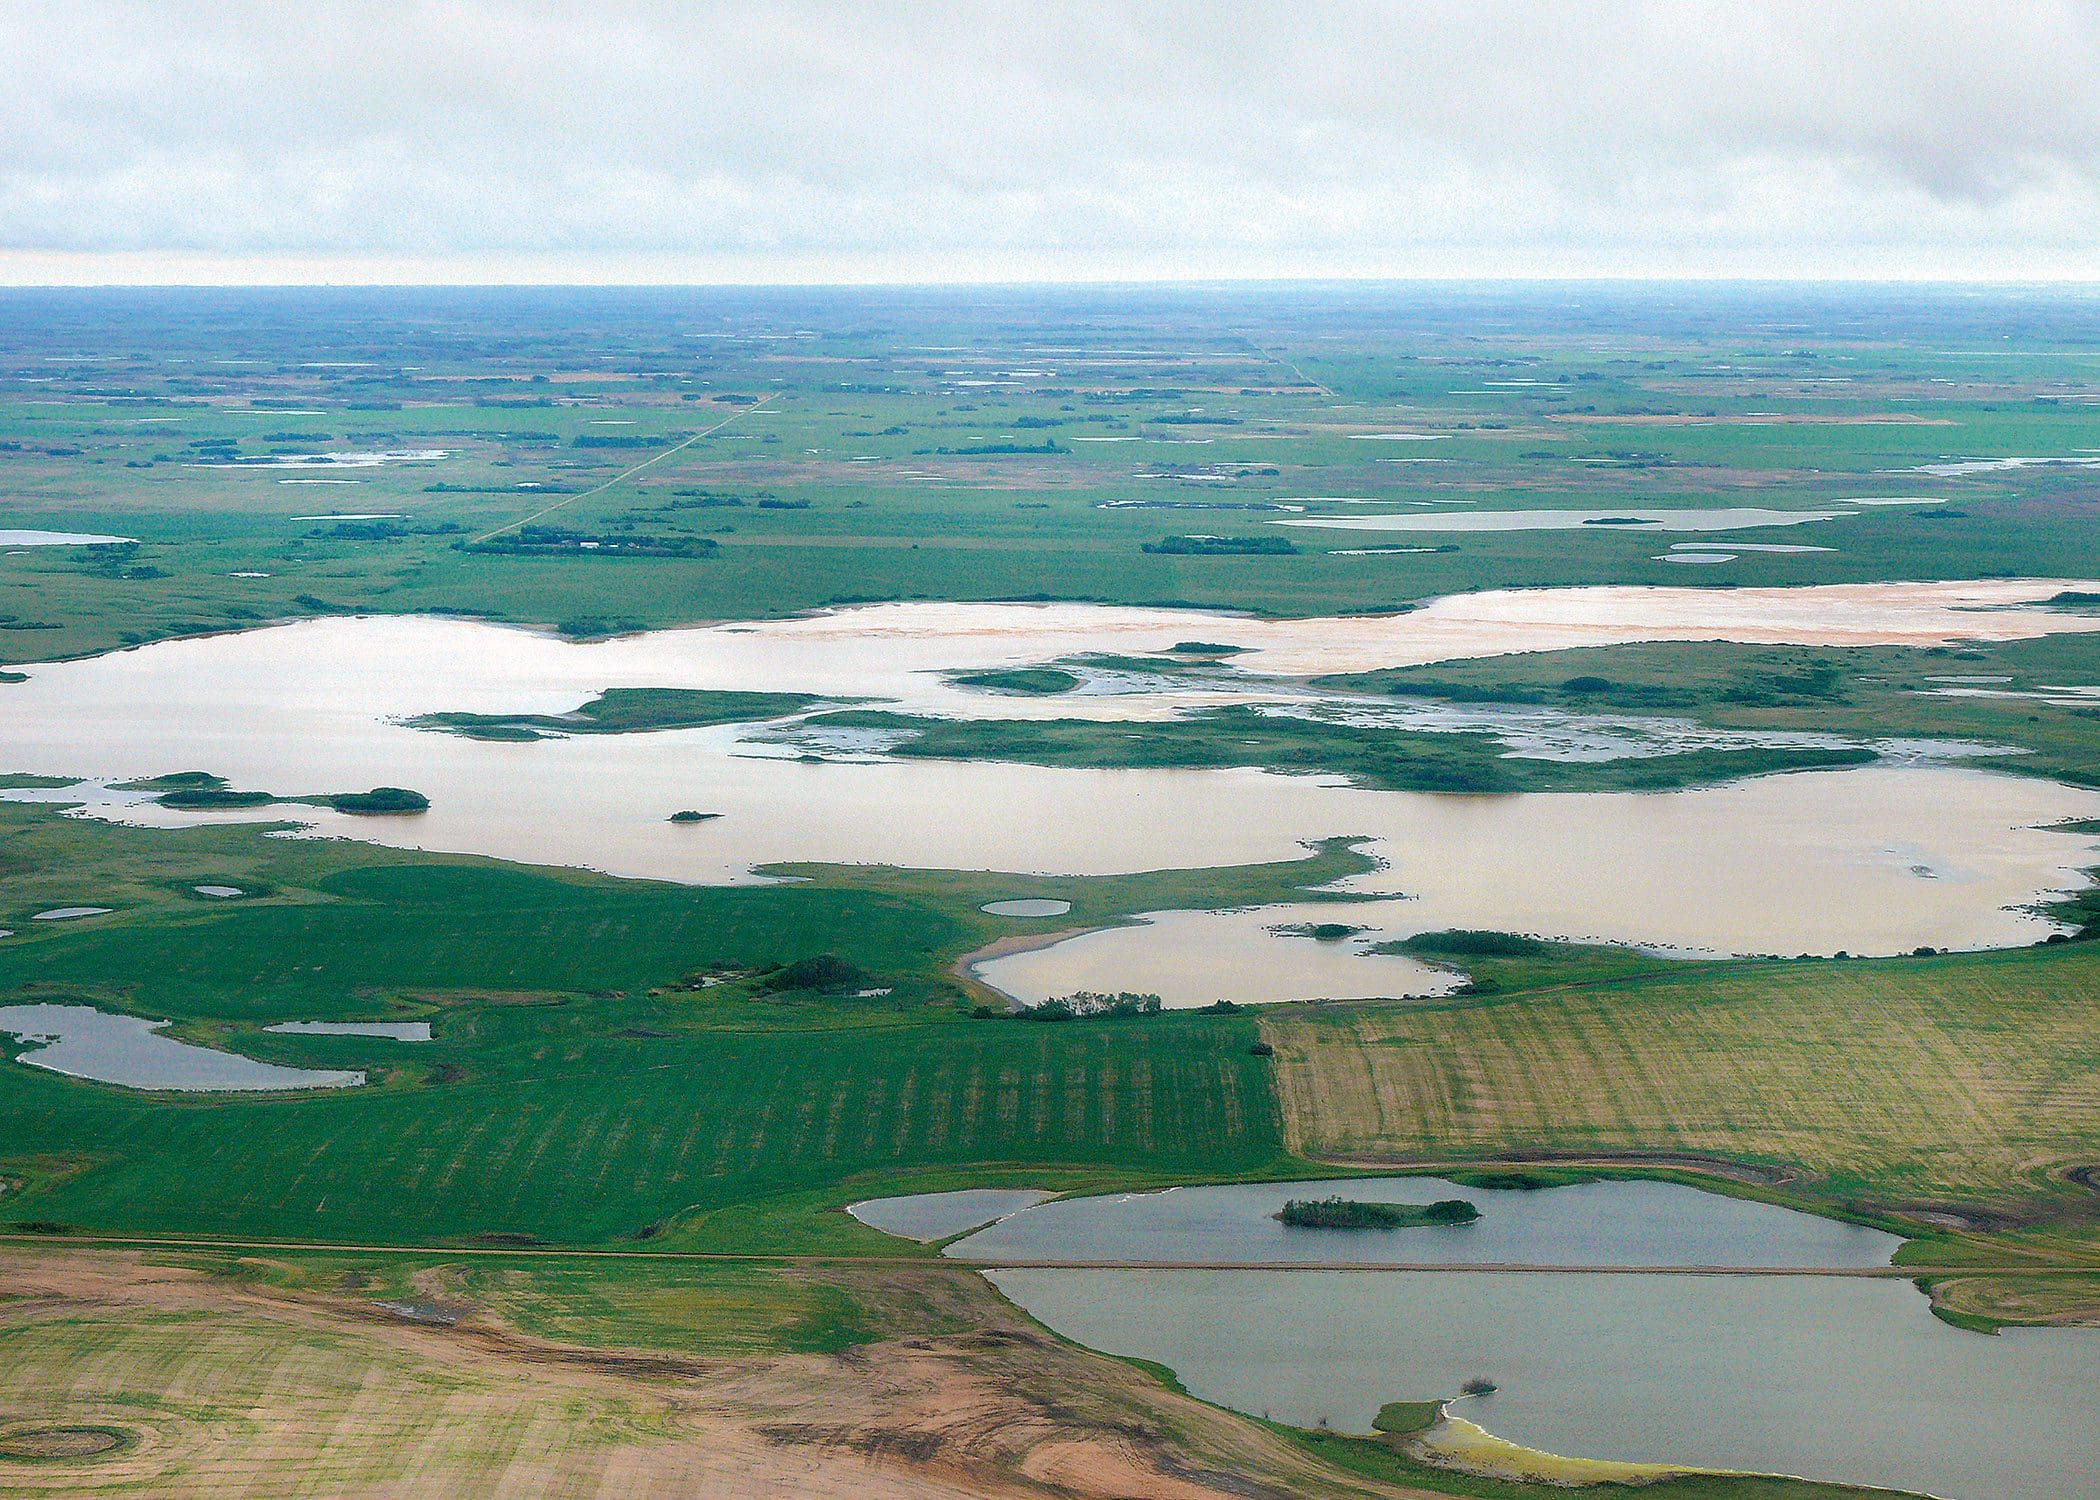 Aerial view of wetland